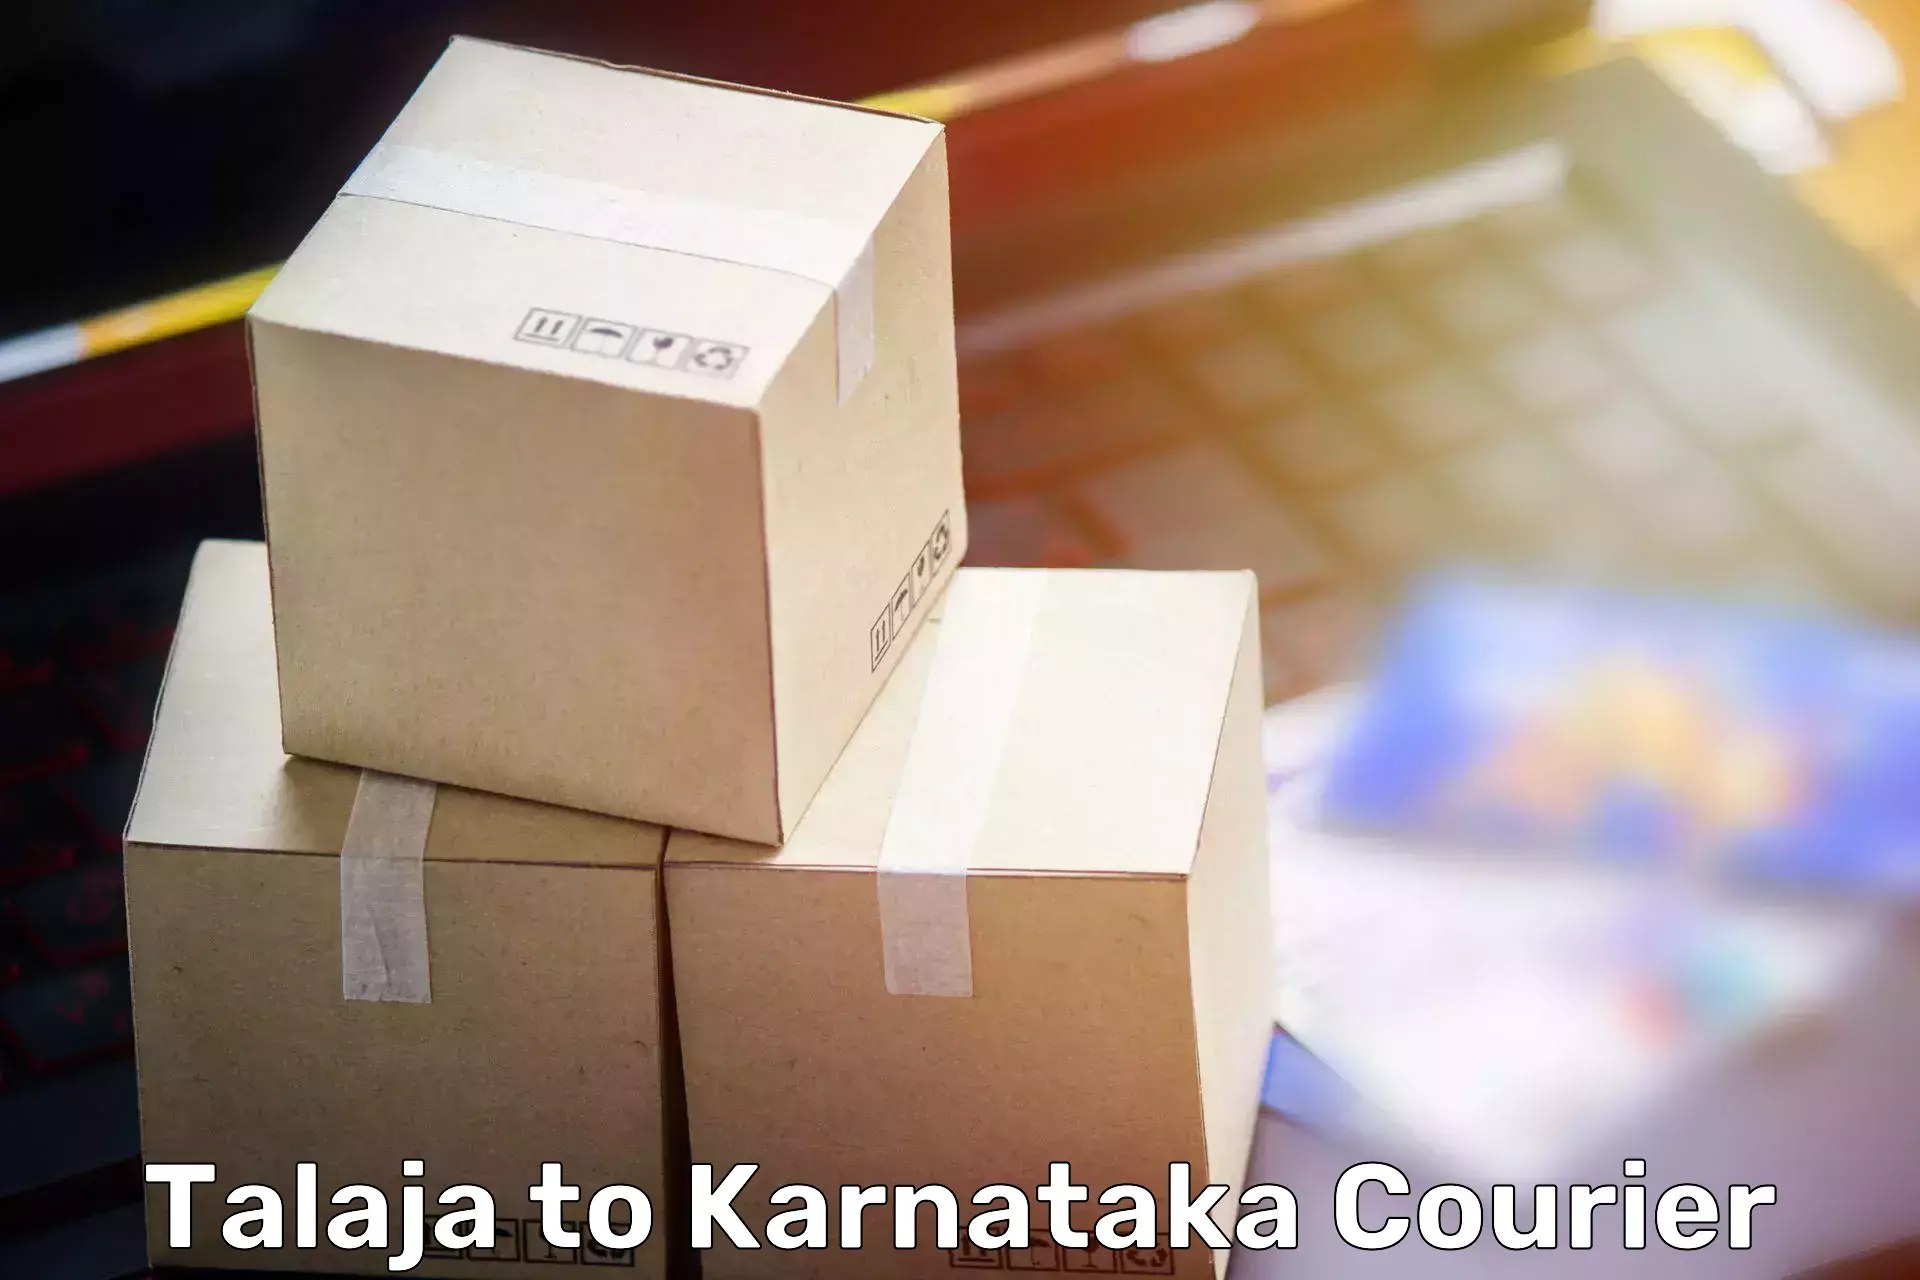 Furniture transport specialists in Talaja to Karnataka